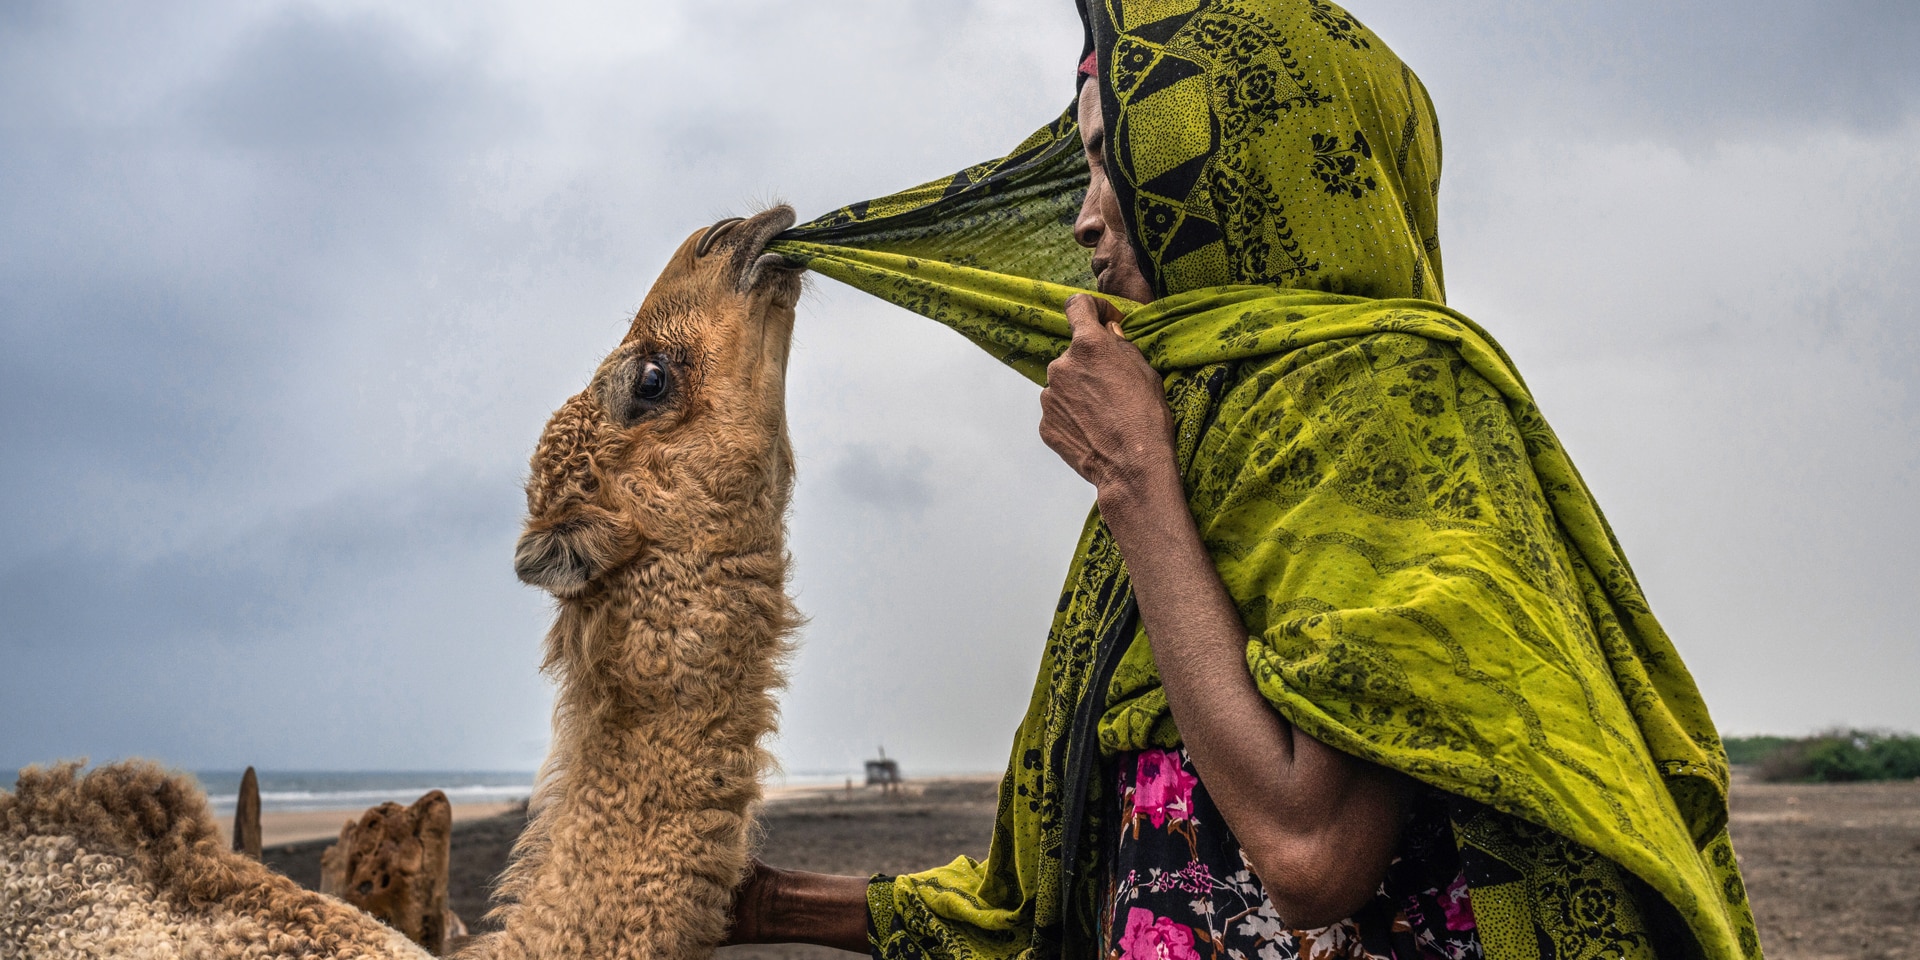 Un chameau grignote le foulard vert d’une femme. La femme maintient d’une main son foulard sous le menton et caresse le chameau de l’autre main.